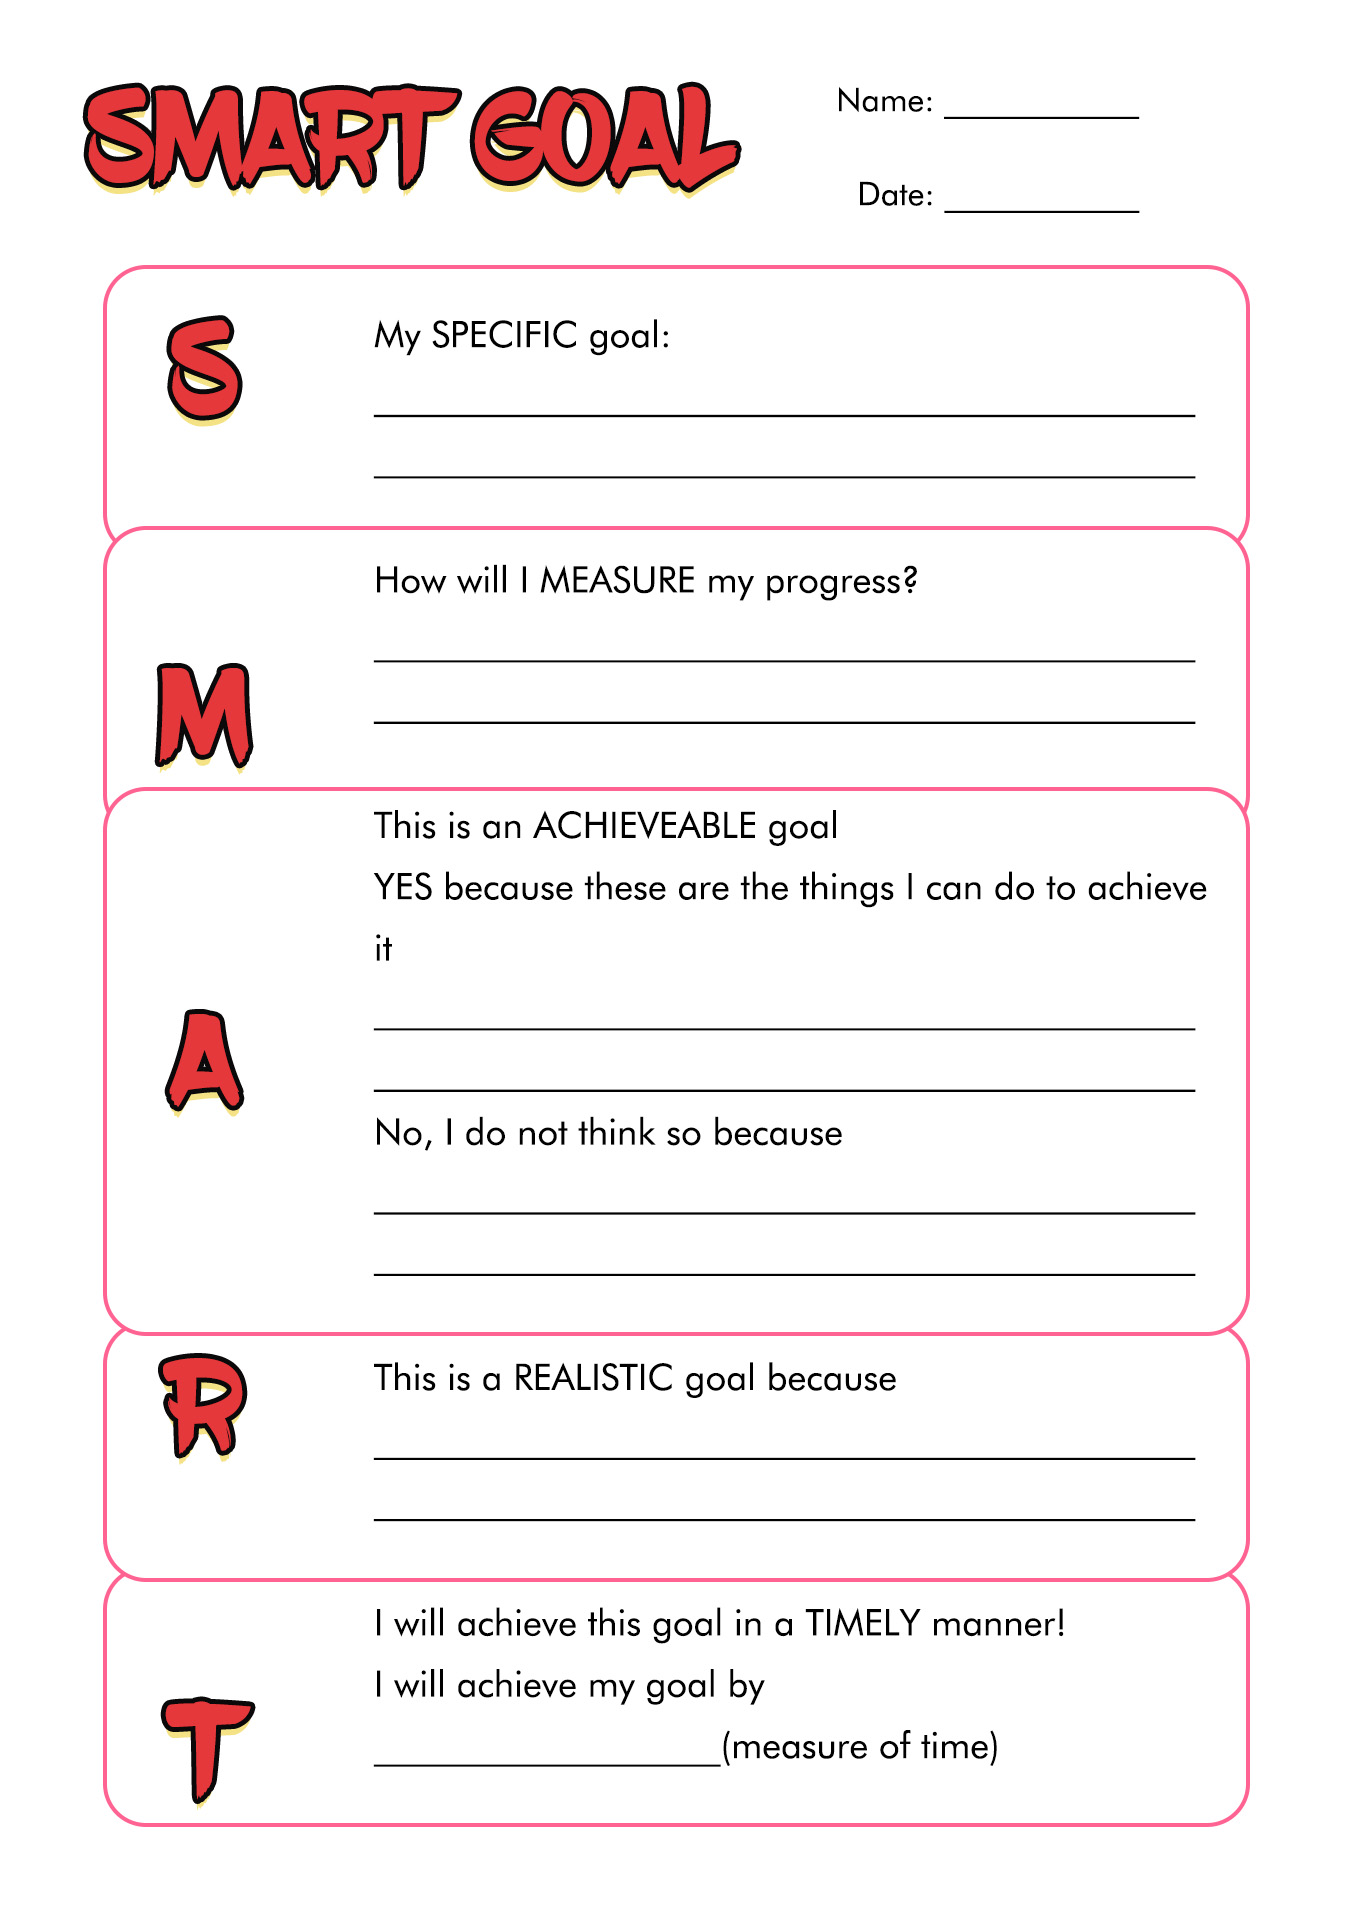 Smart Goal Worksheet PDF Image